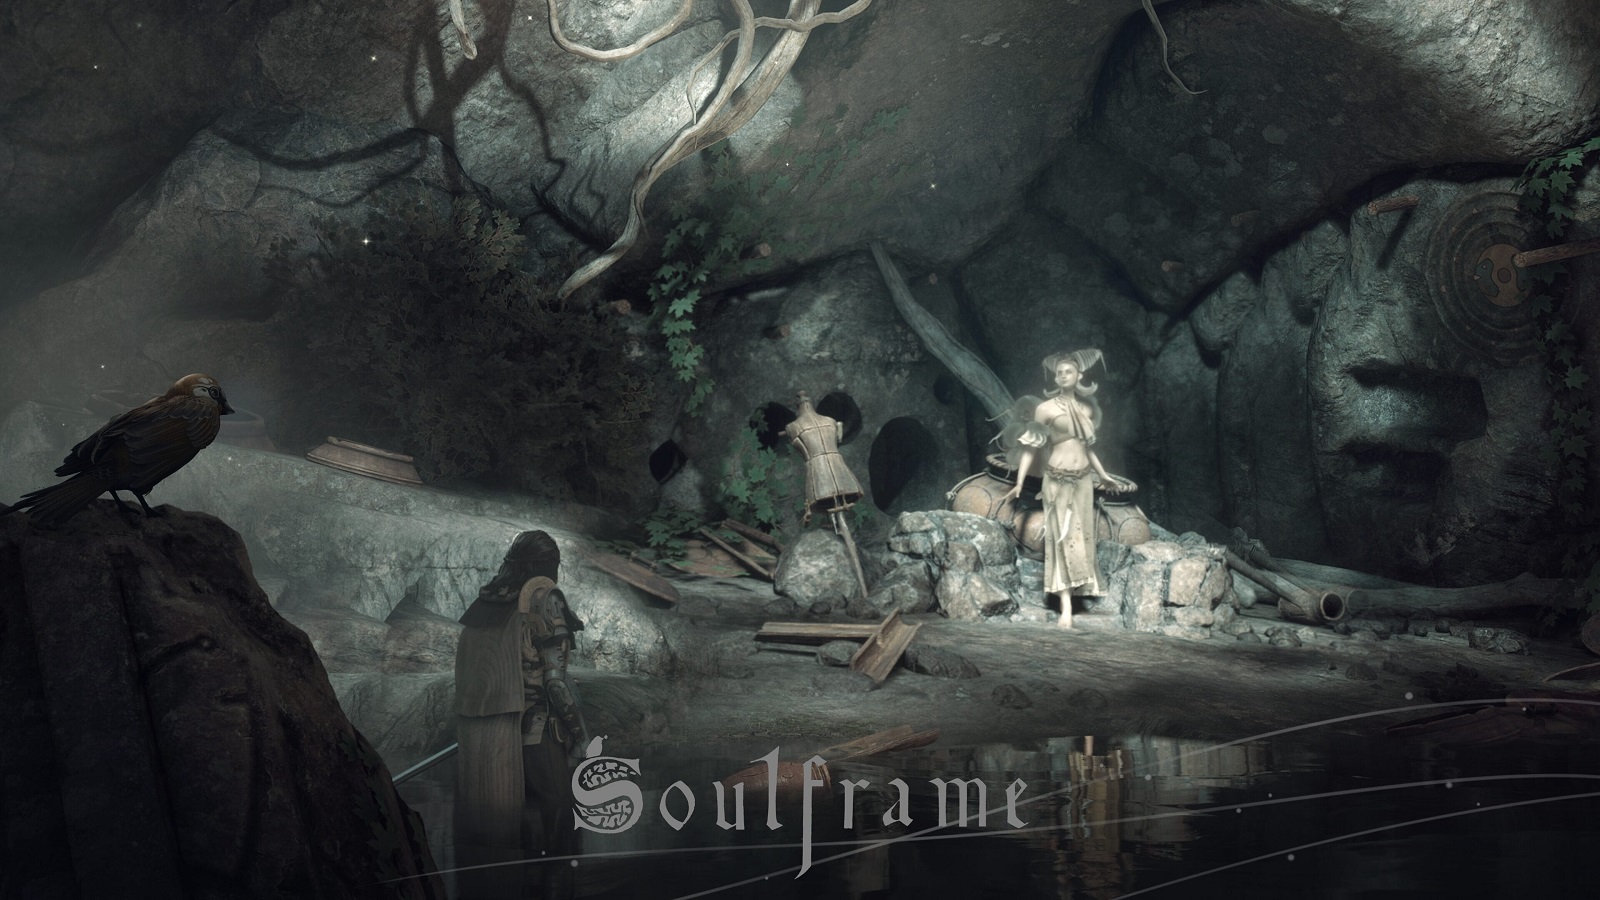 Авторы Warframe представили 17 минут геймплея экшена Soulframe